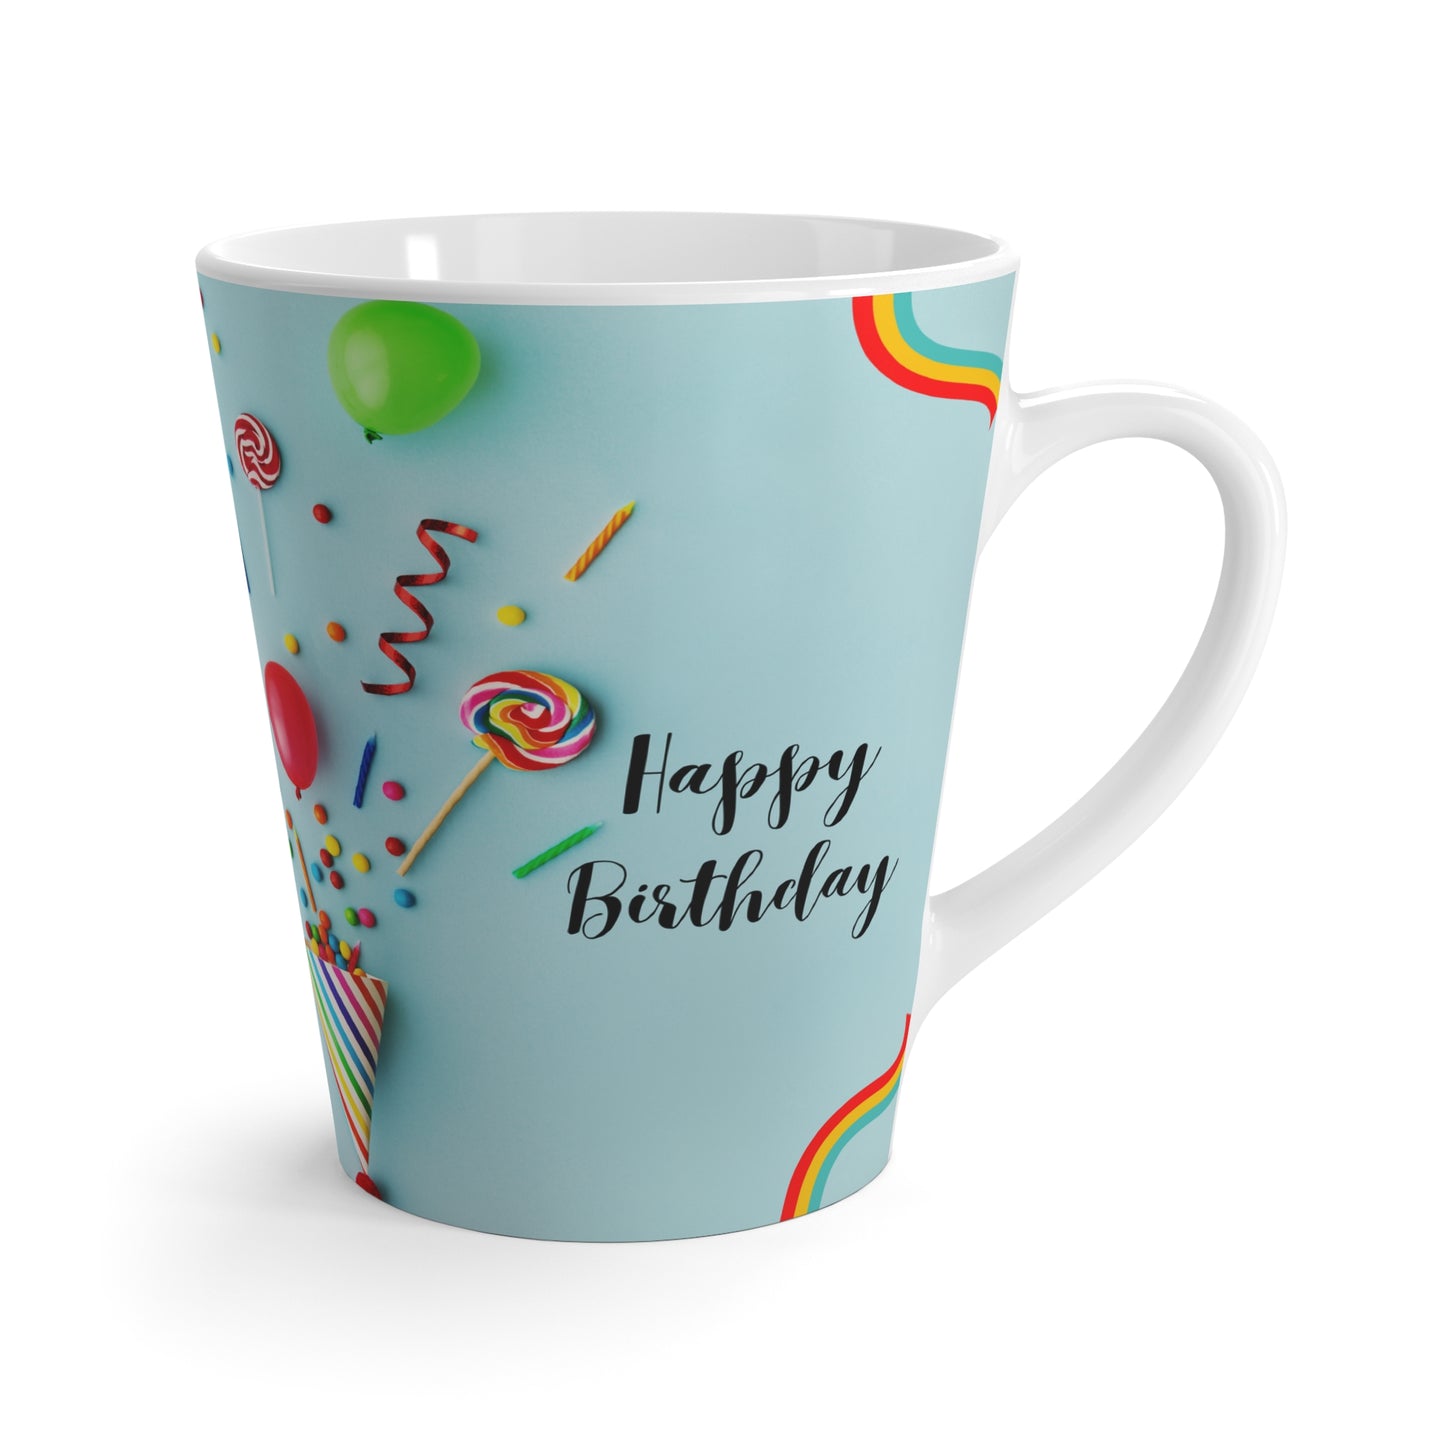 Happy Birthday Latte Mug, 12oz, Sky Blue